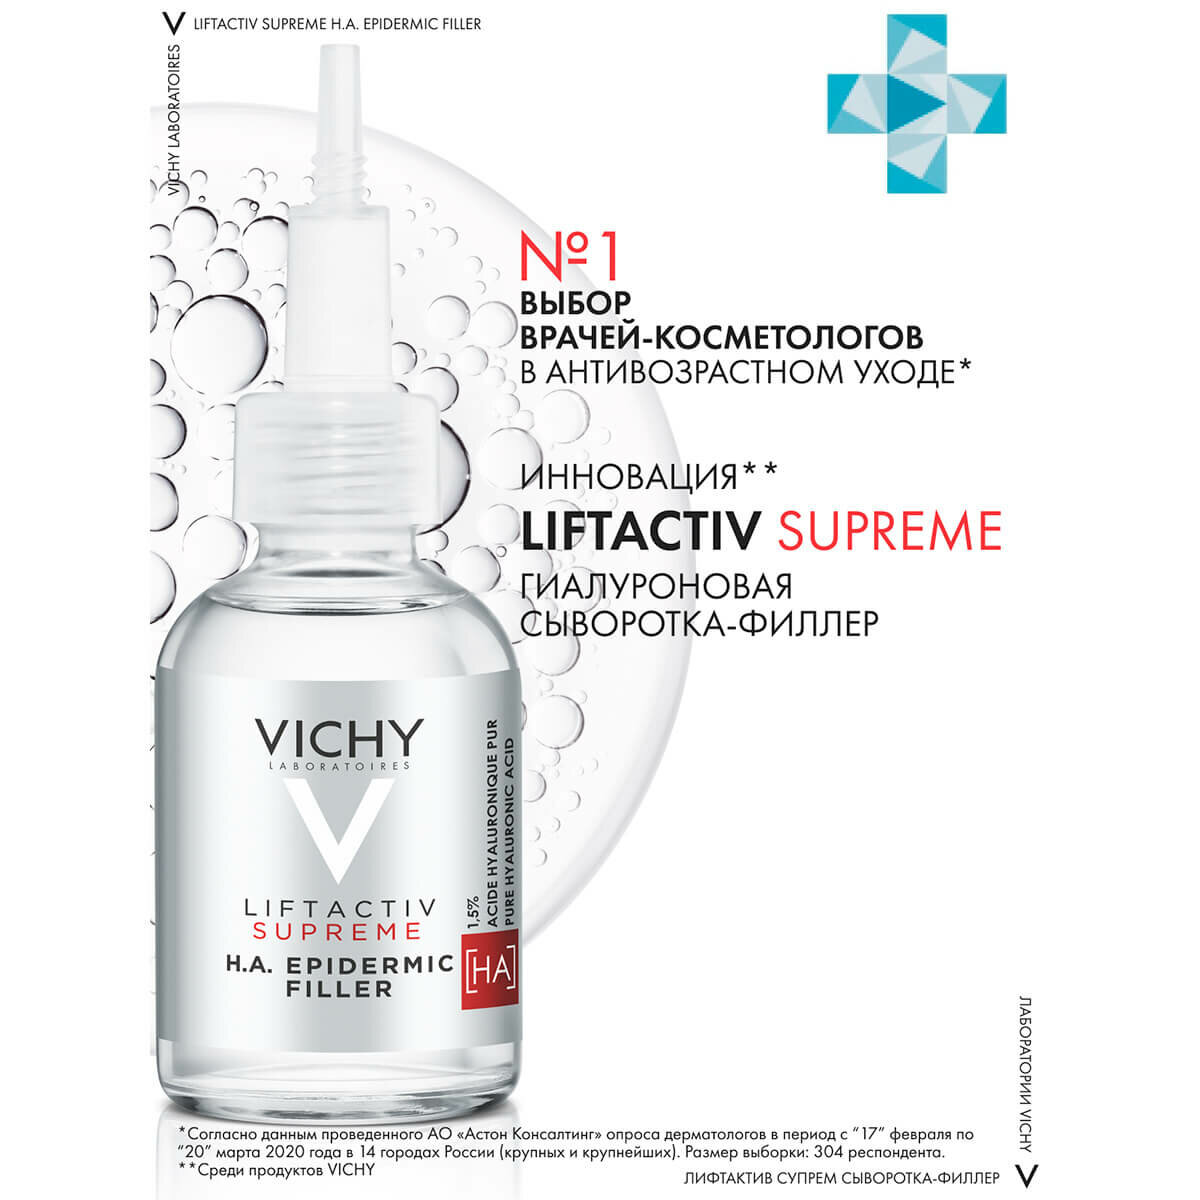 VICHY Liftactiv Supreme Гиалуроновая сыворотка-филлер пролонгированного действия, 30 мл, VICHY